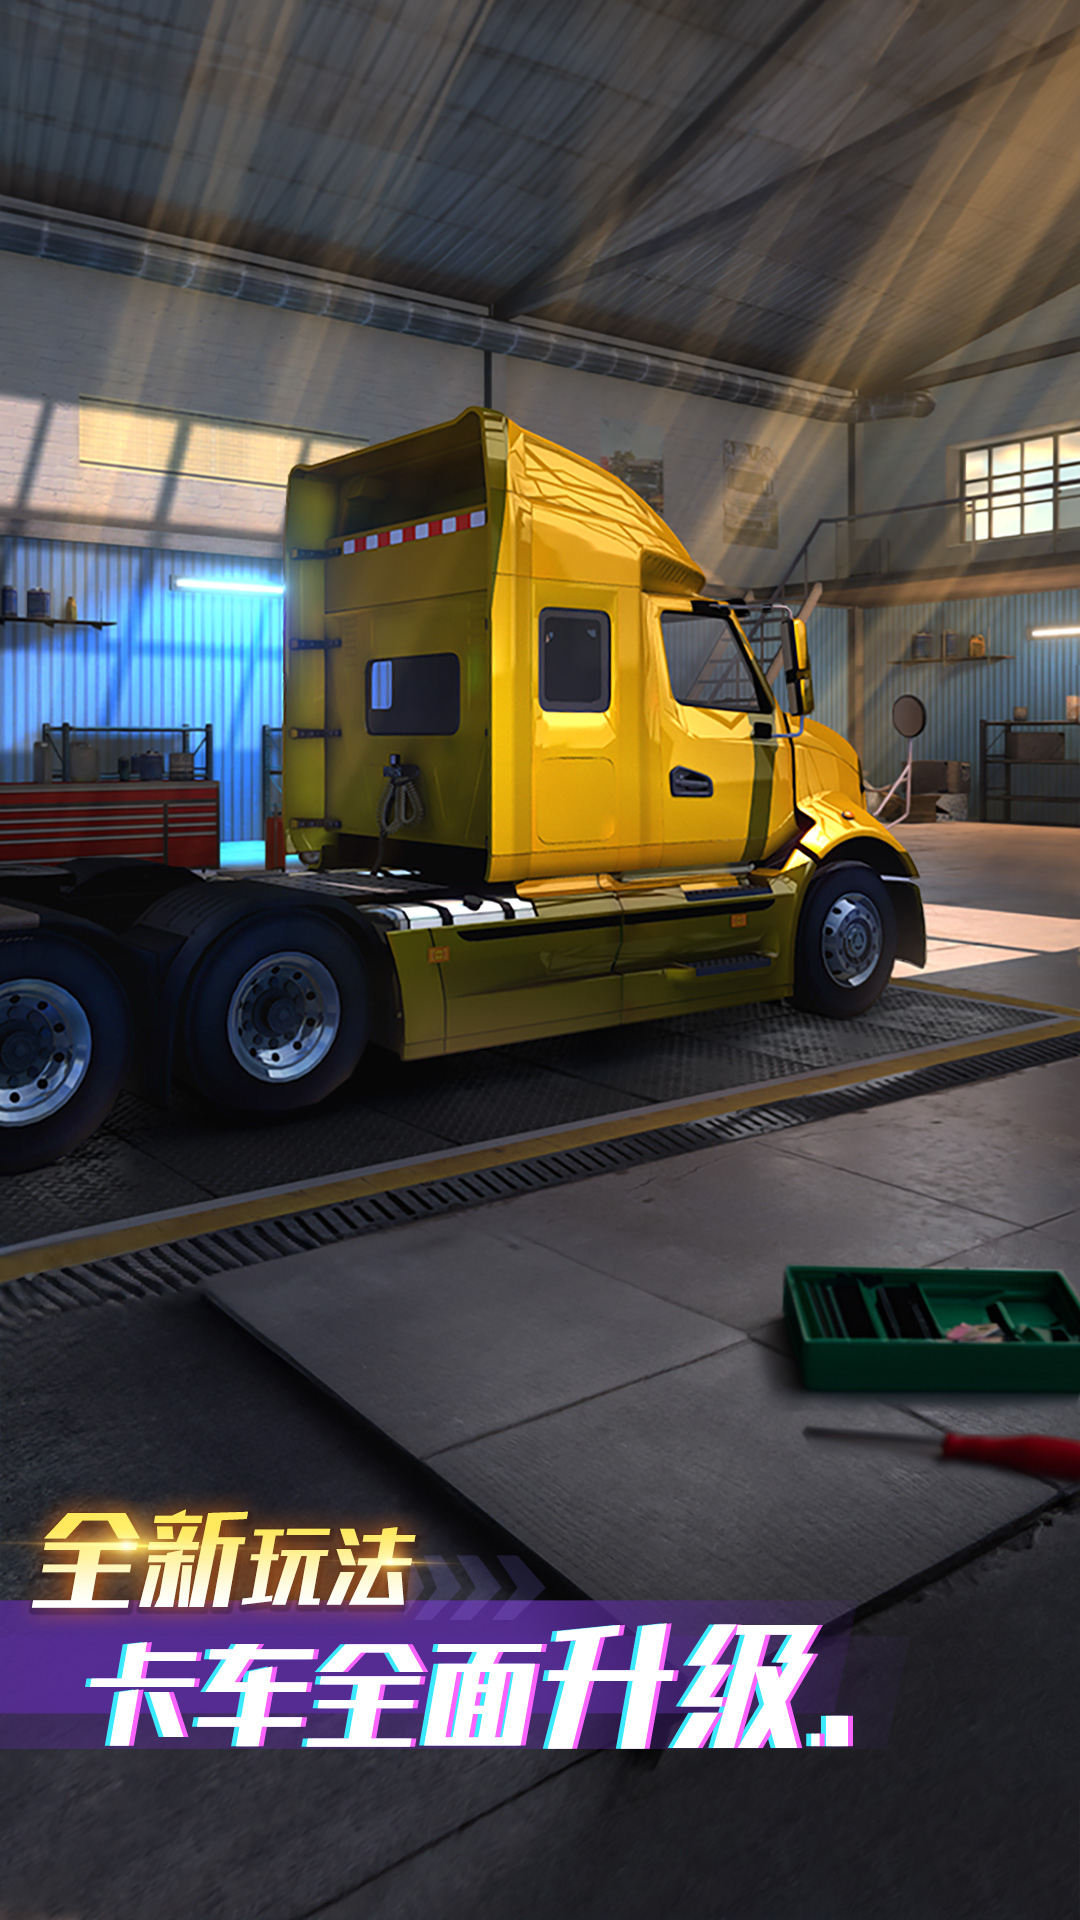 卡车之星游戏下载-卡车之星手游破解版无限金币下载安装